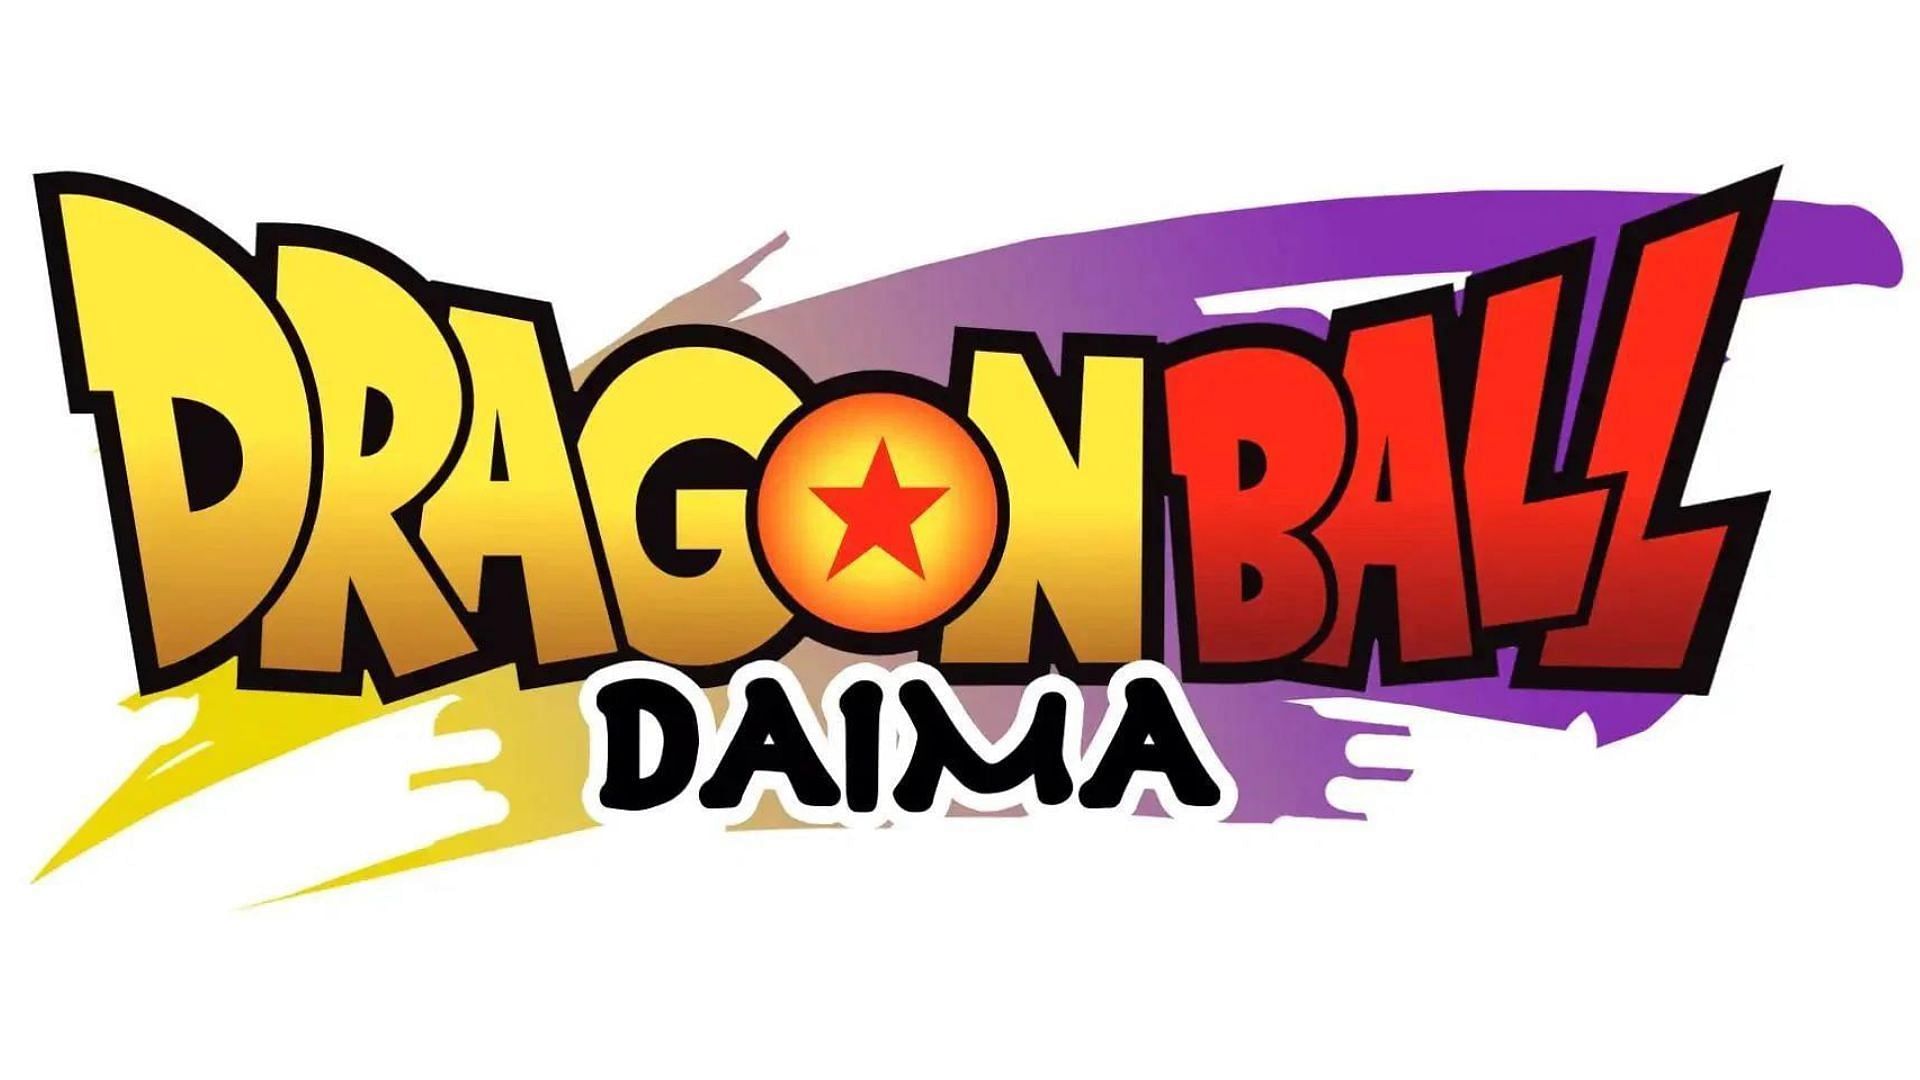 The link between Dragon Ball Daima and the Majin Buu saga hints at